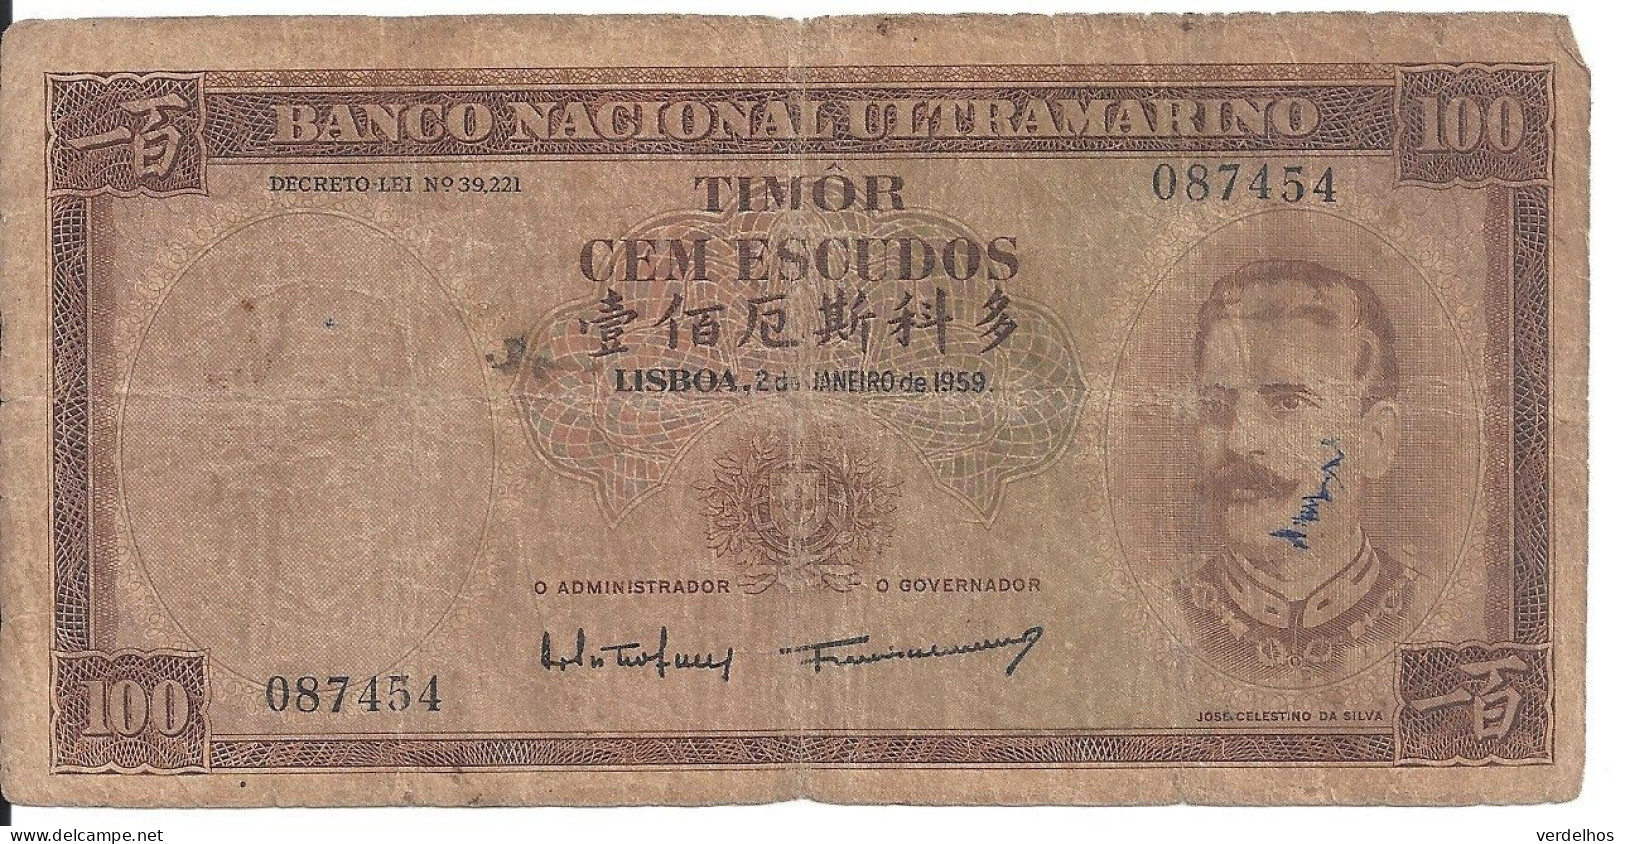 Timor 100 ESCUDOS 1959 VG+ P 24 - Hong Kong